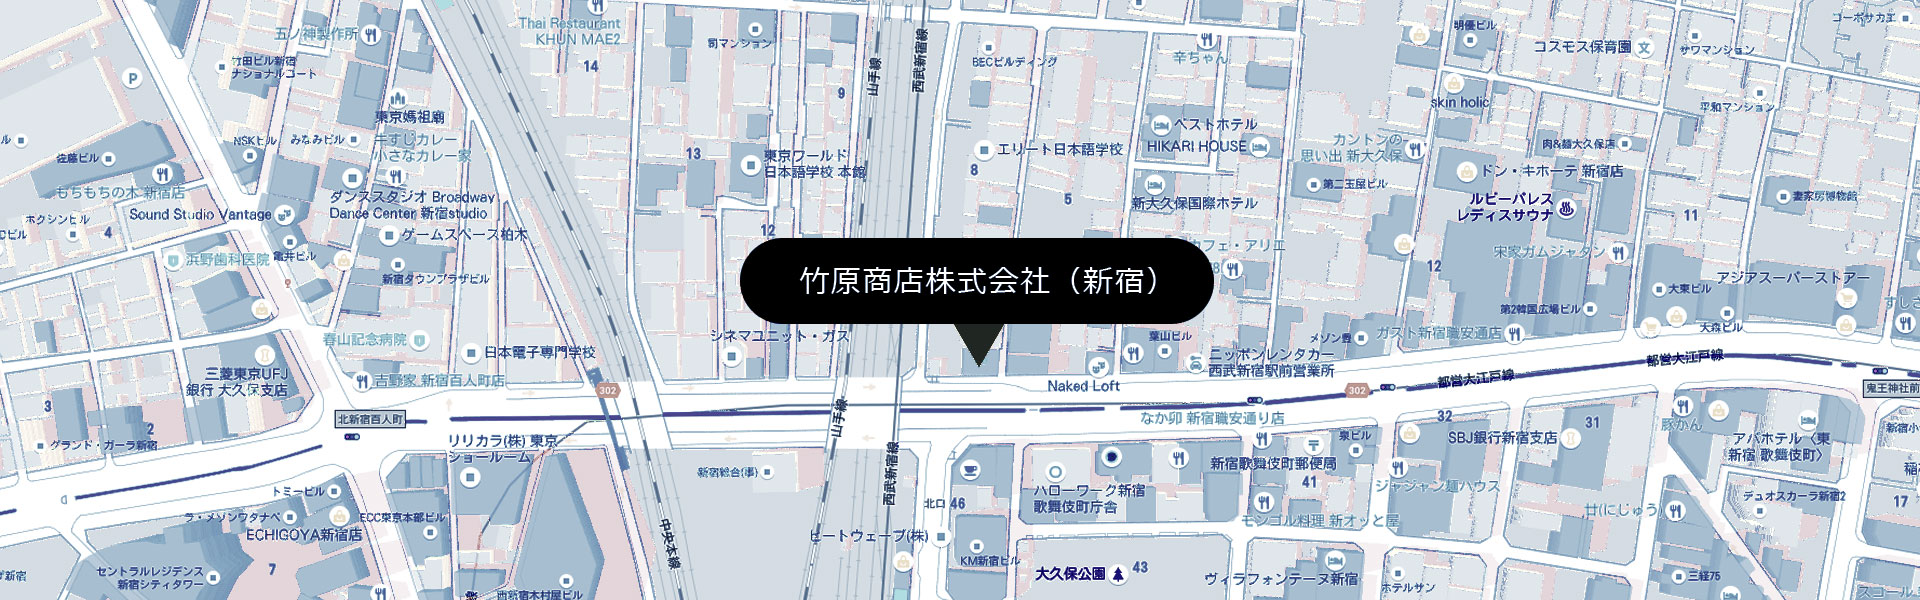 access-map-shinjuku